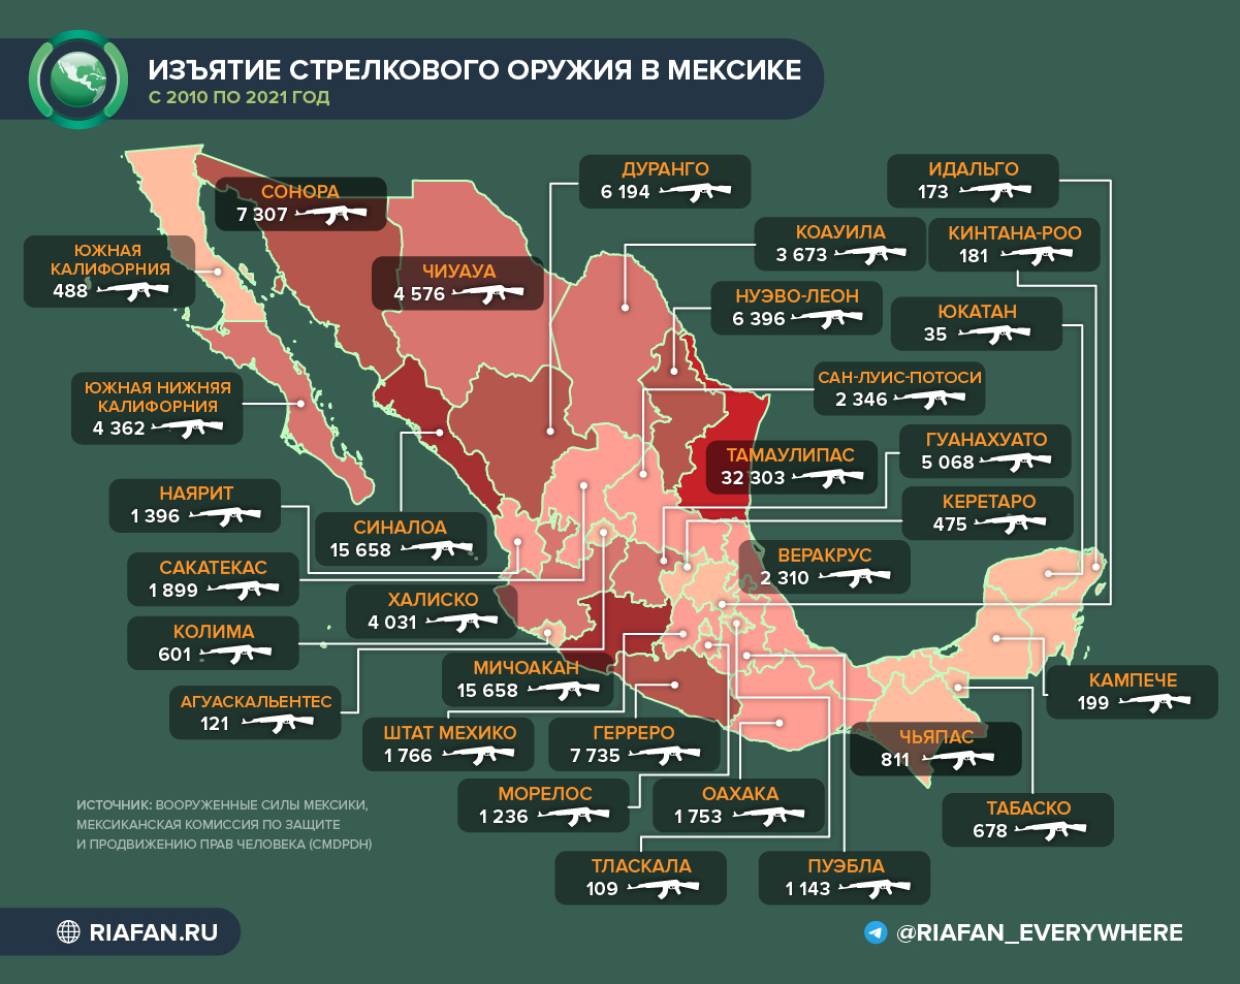 Арестованы граждане США, снабжавшие оружием самый агрессивный картель Мексики